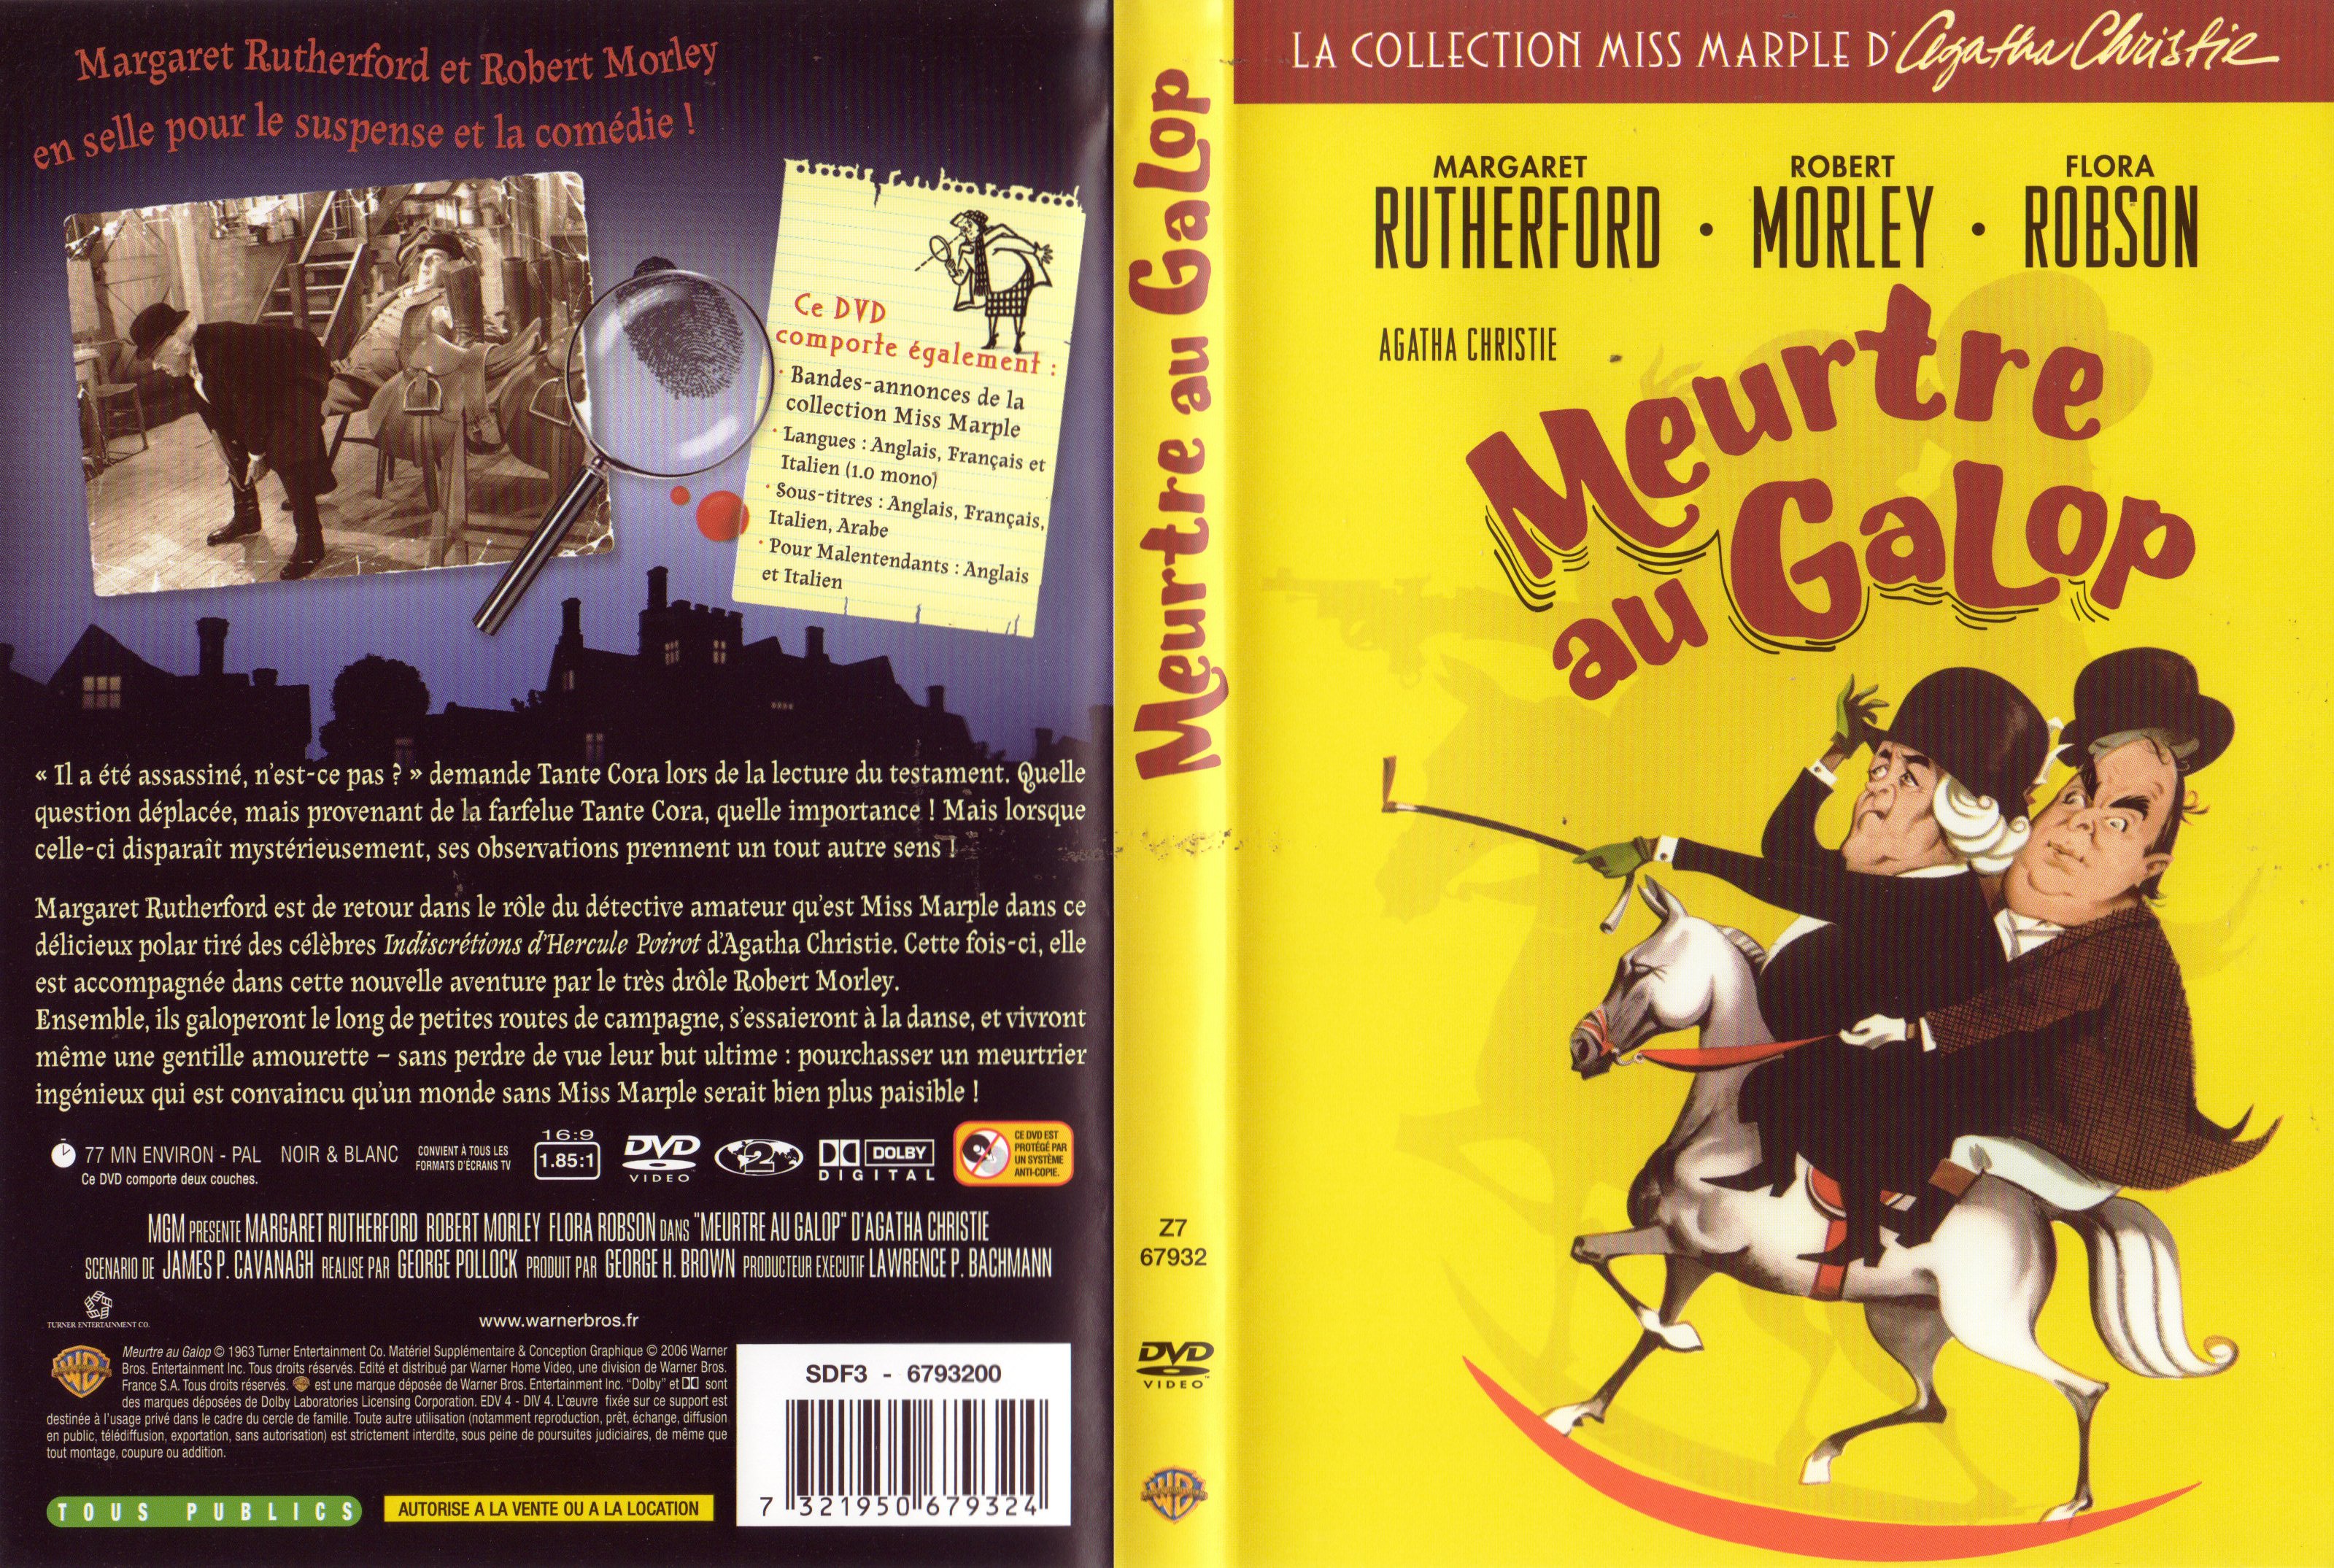 Jaquette DVD Miss Marple - Meurtre au galop